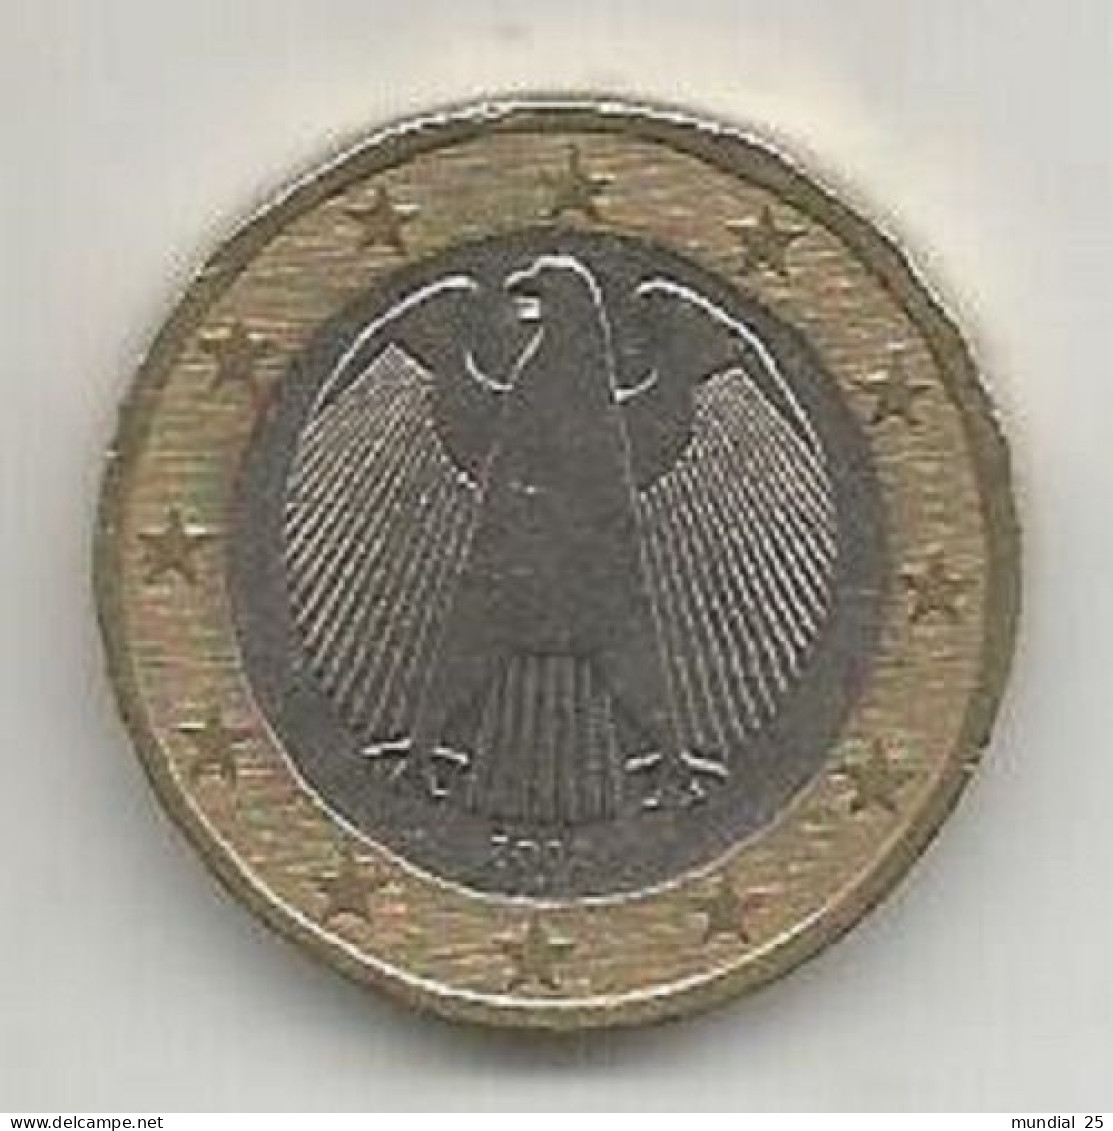 GERMANY 1 EURO 2002 (A) - Duitsland